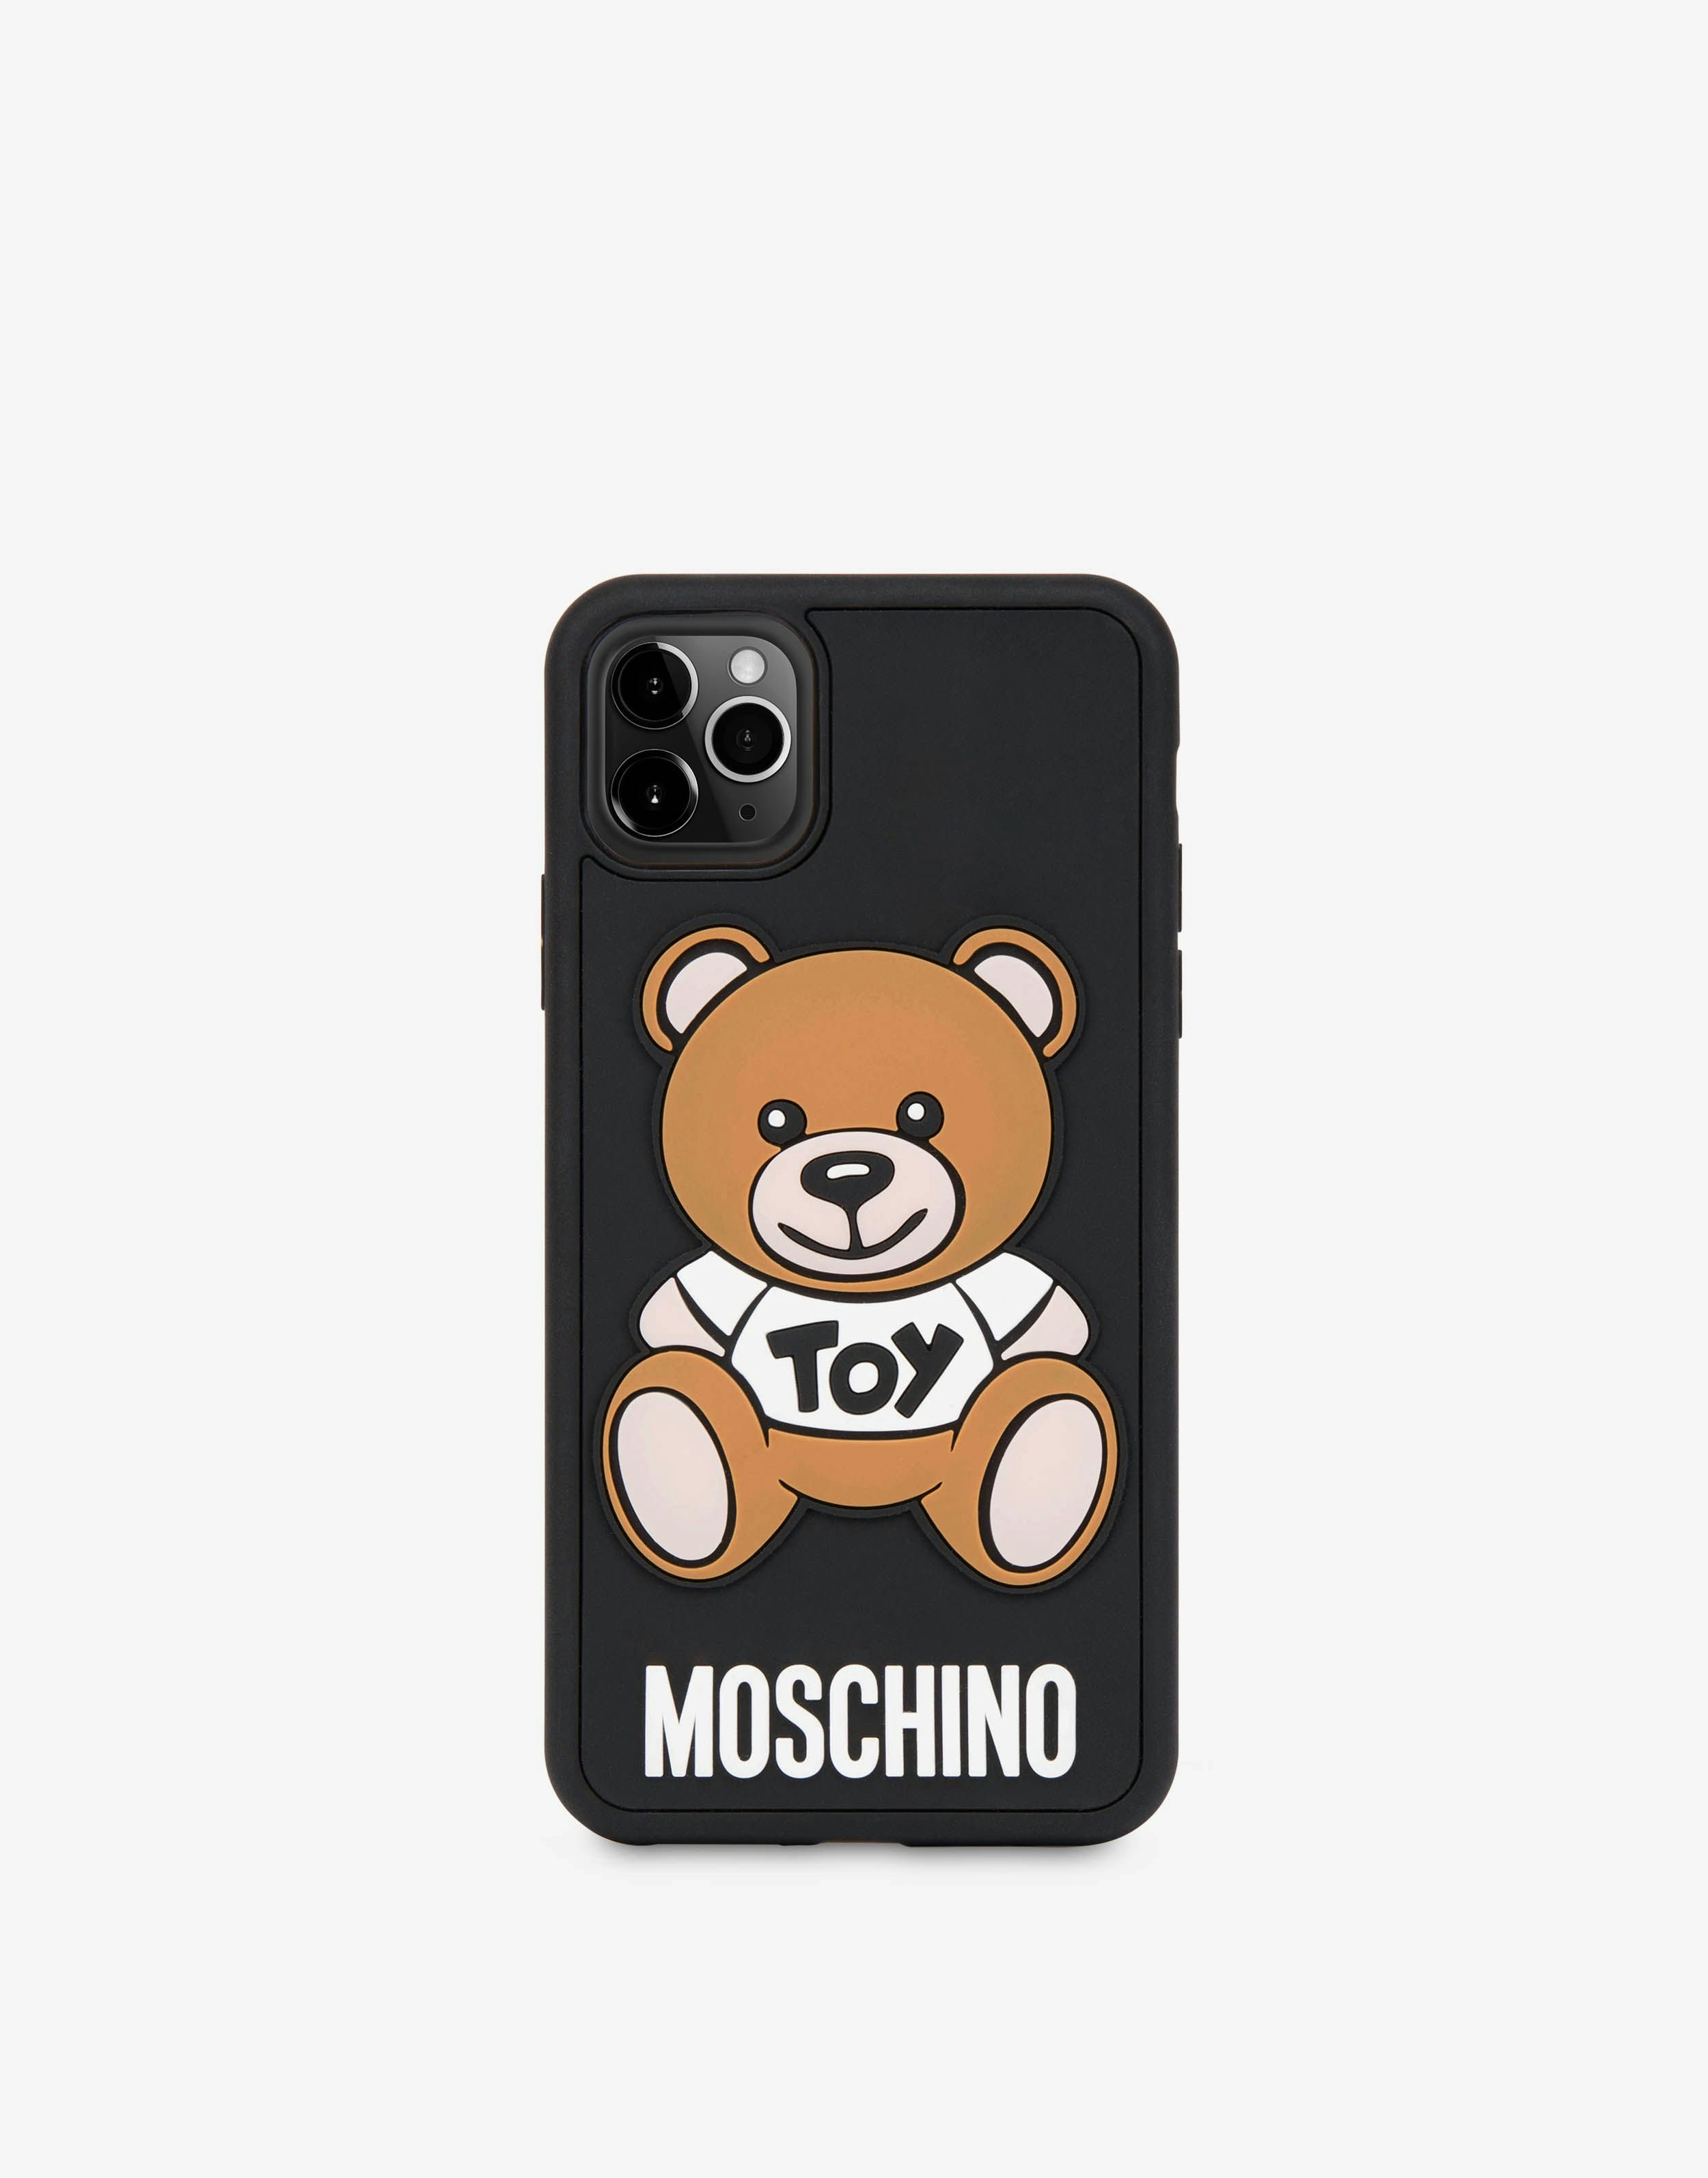 Moschino iPhone - Airpods アクセサリー - レディース アクセサリー 